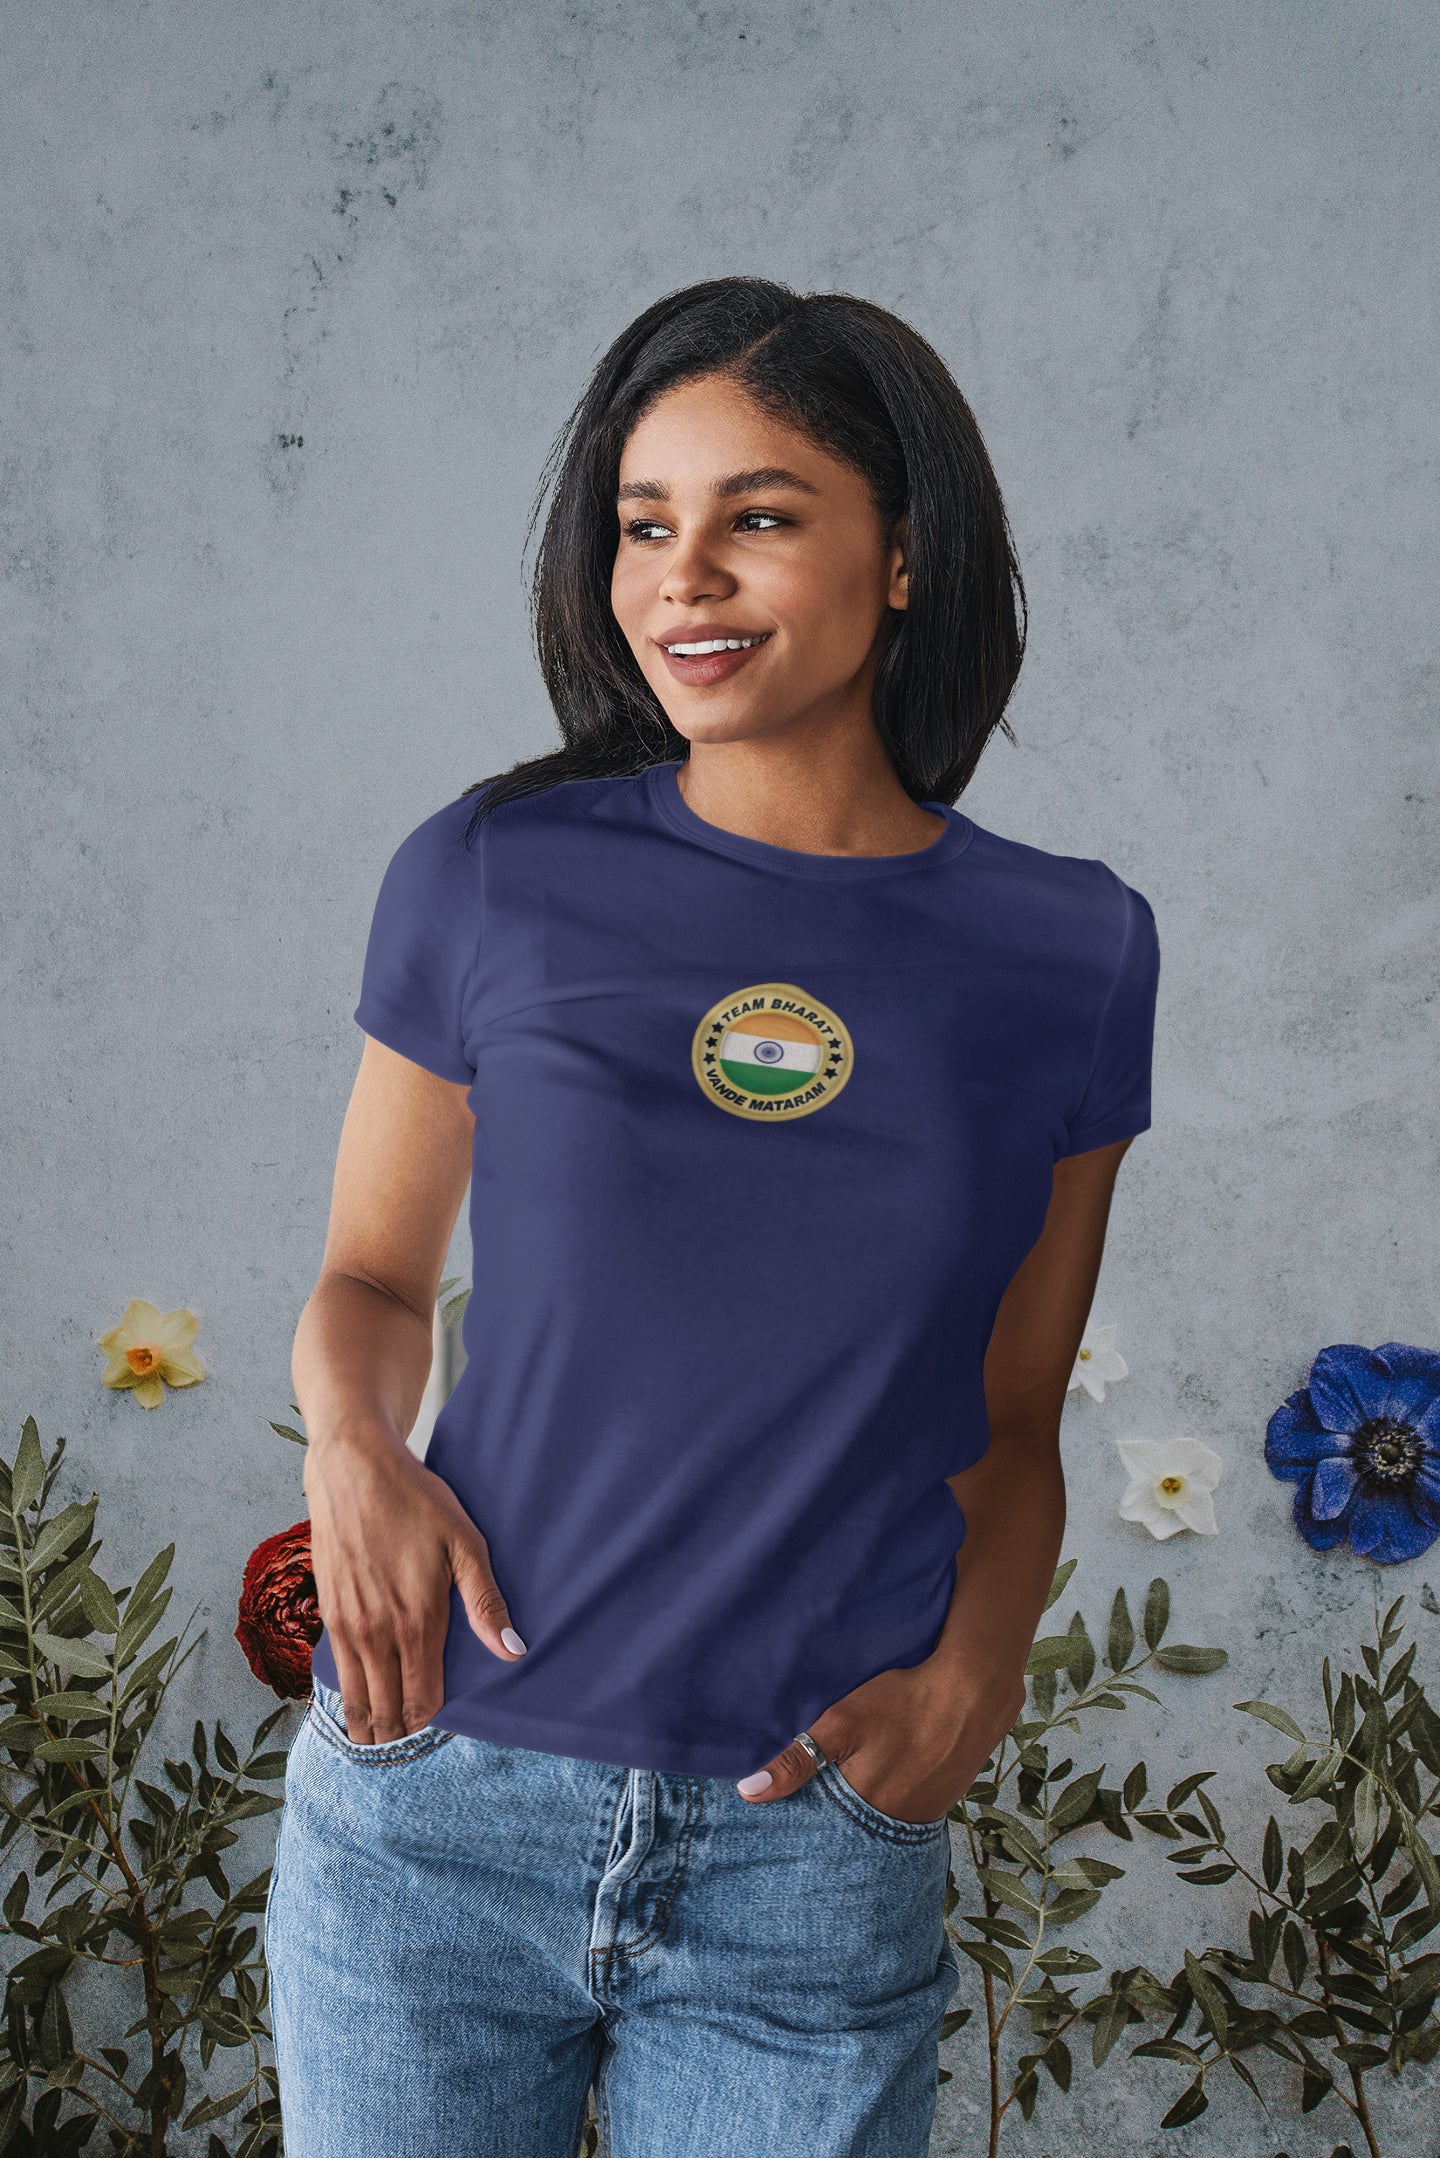 Summer T-shirt for Women ( Team Bharat Small )